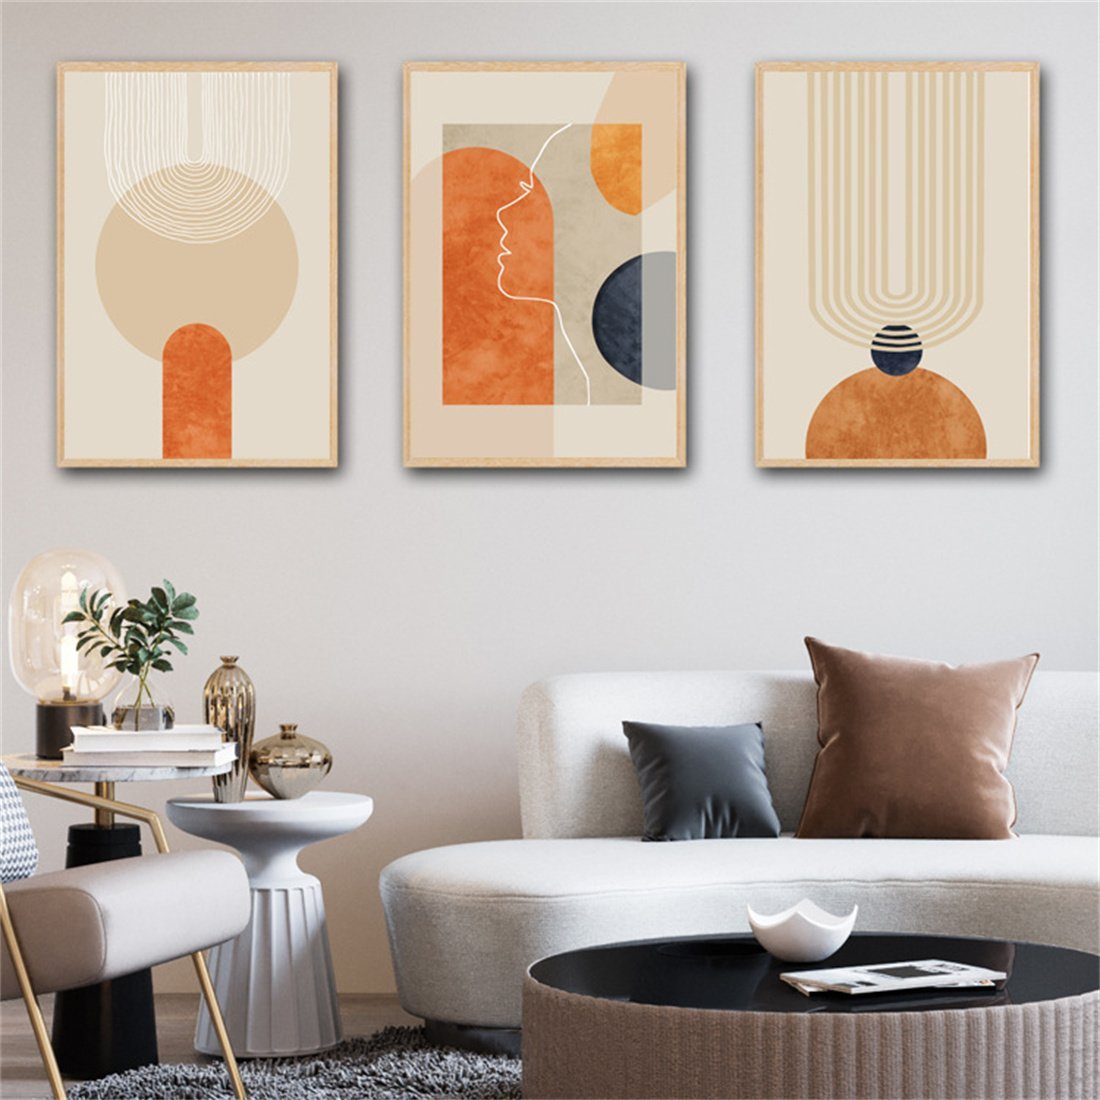 HOPPO~ Wandbild 3 orange line dekorative Bildeinsätze, moderne rahmenlose Einsätze